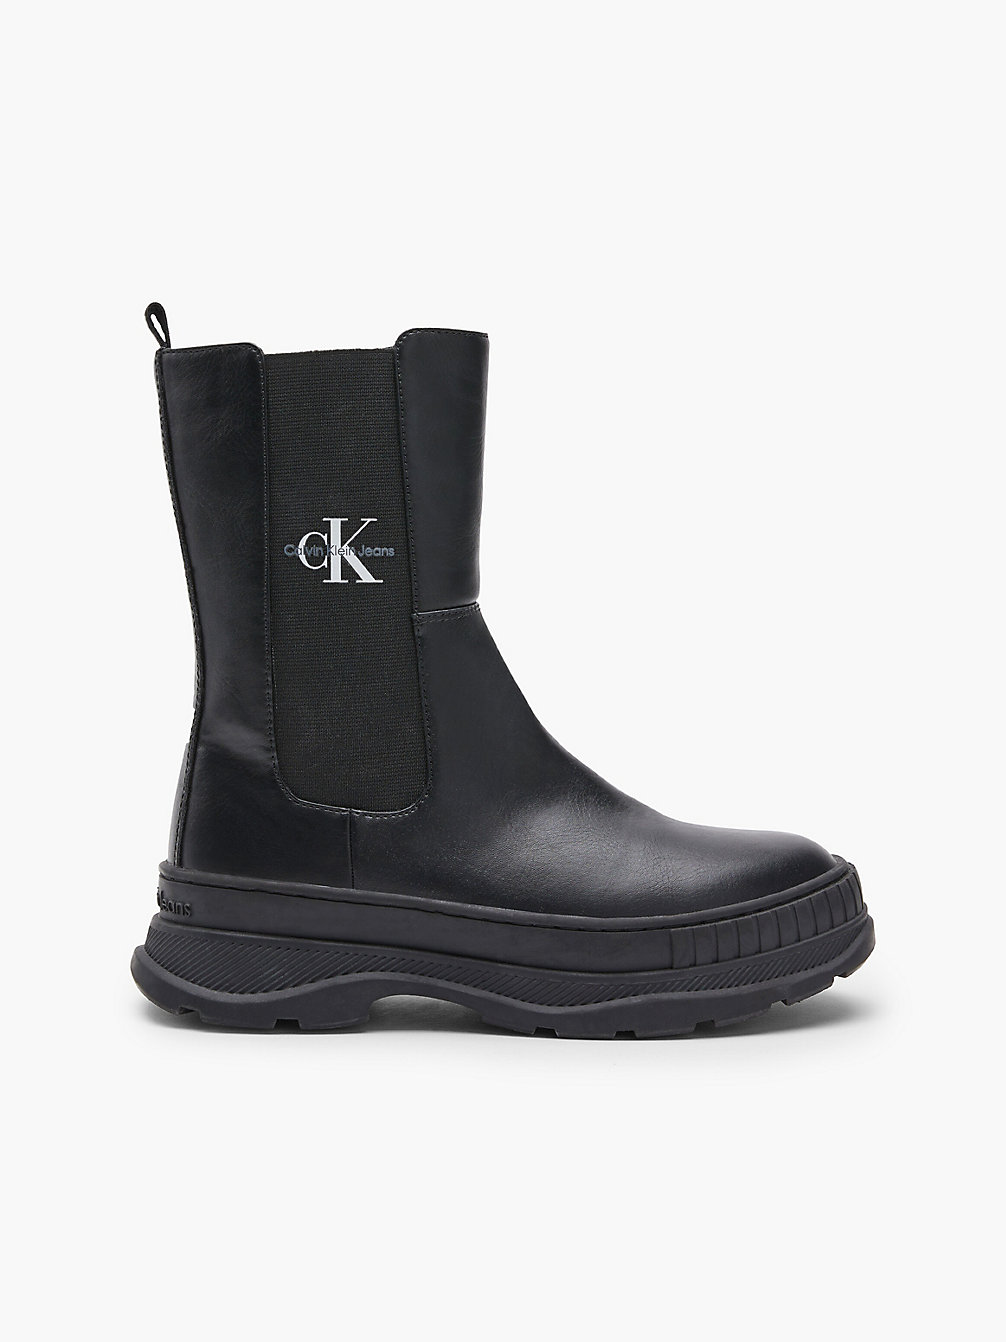 BLACK Kids Chelsea Boots undefined kids unisex Calvin Klein